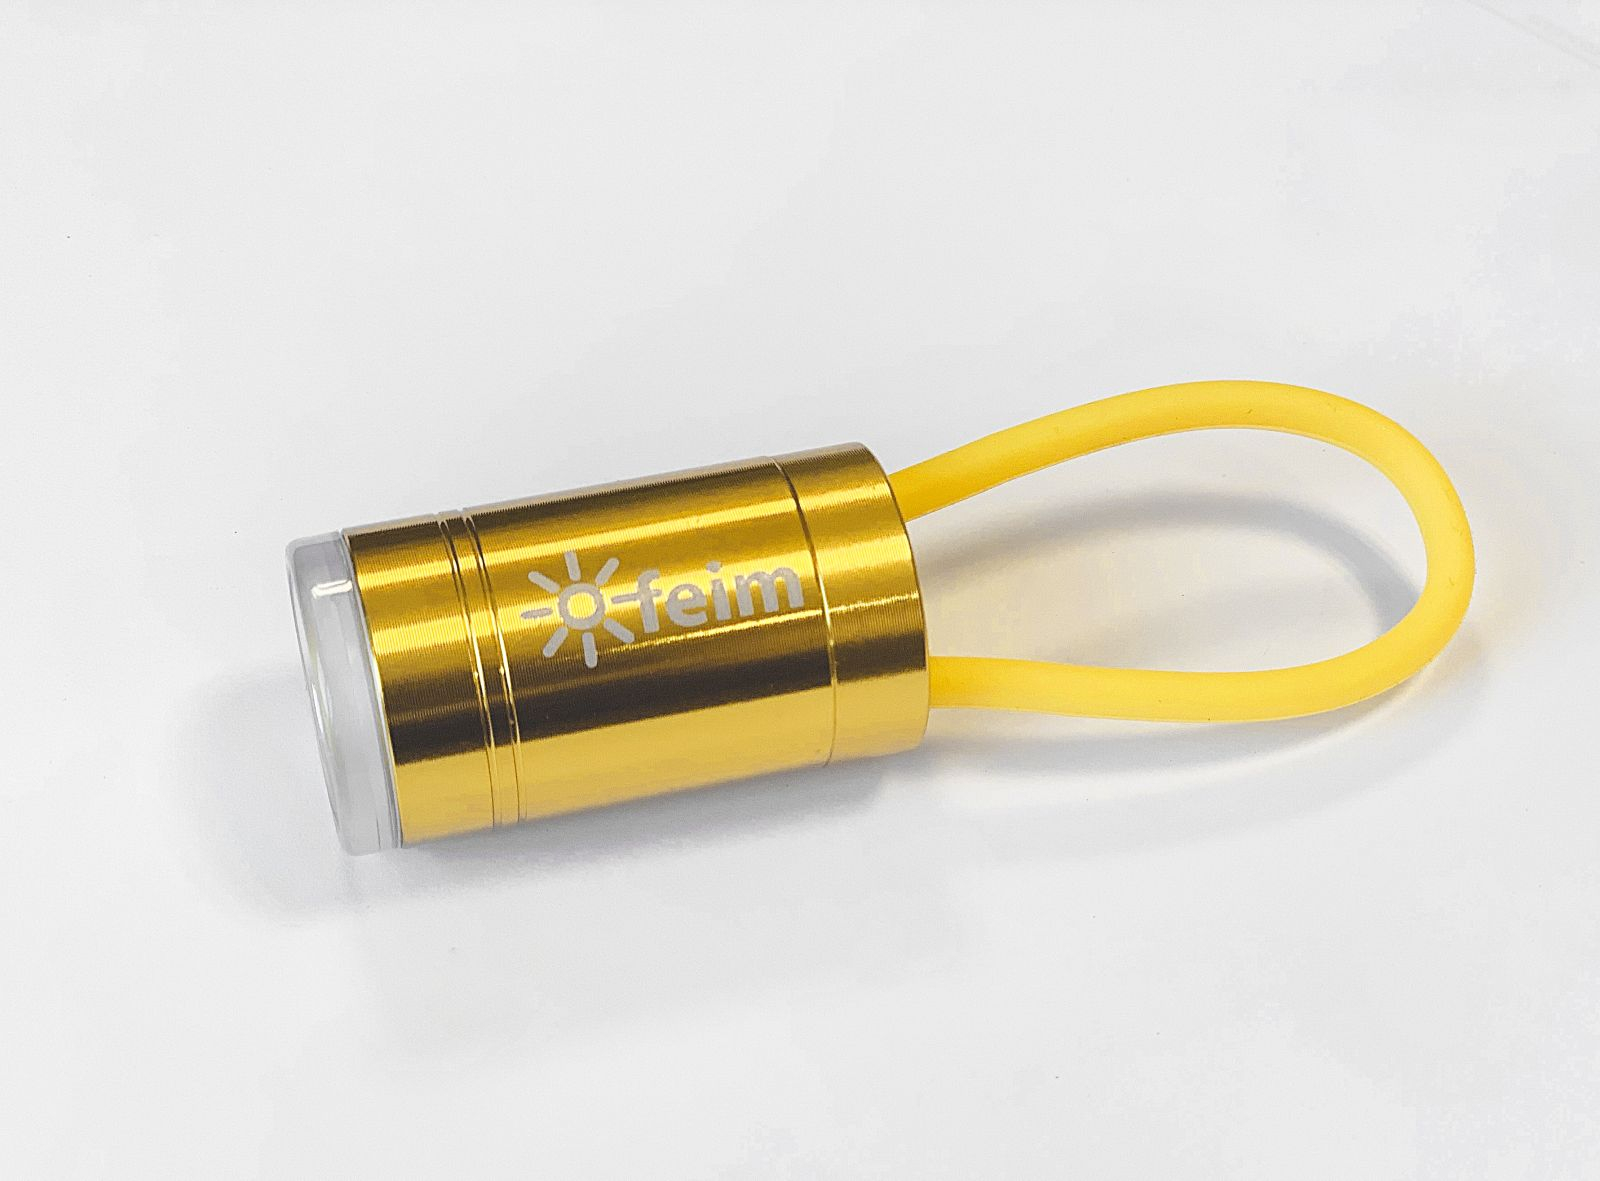 001 FEIM zlaté LED svítidlo na klíče velké YY235-G5